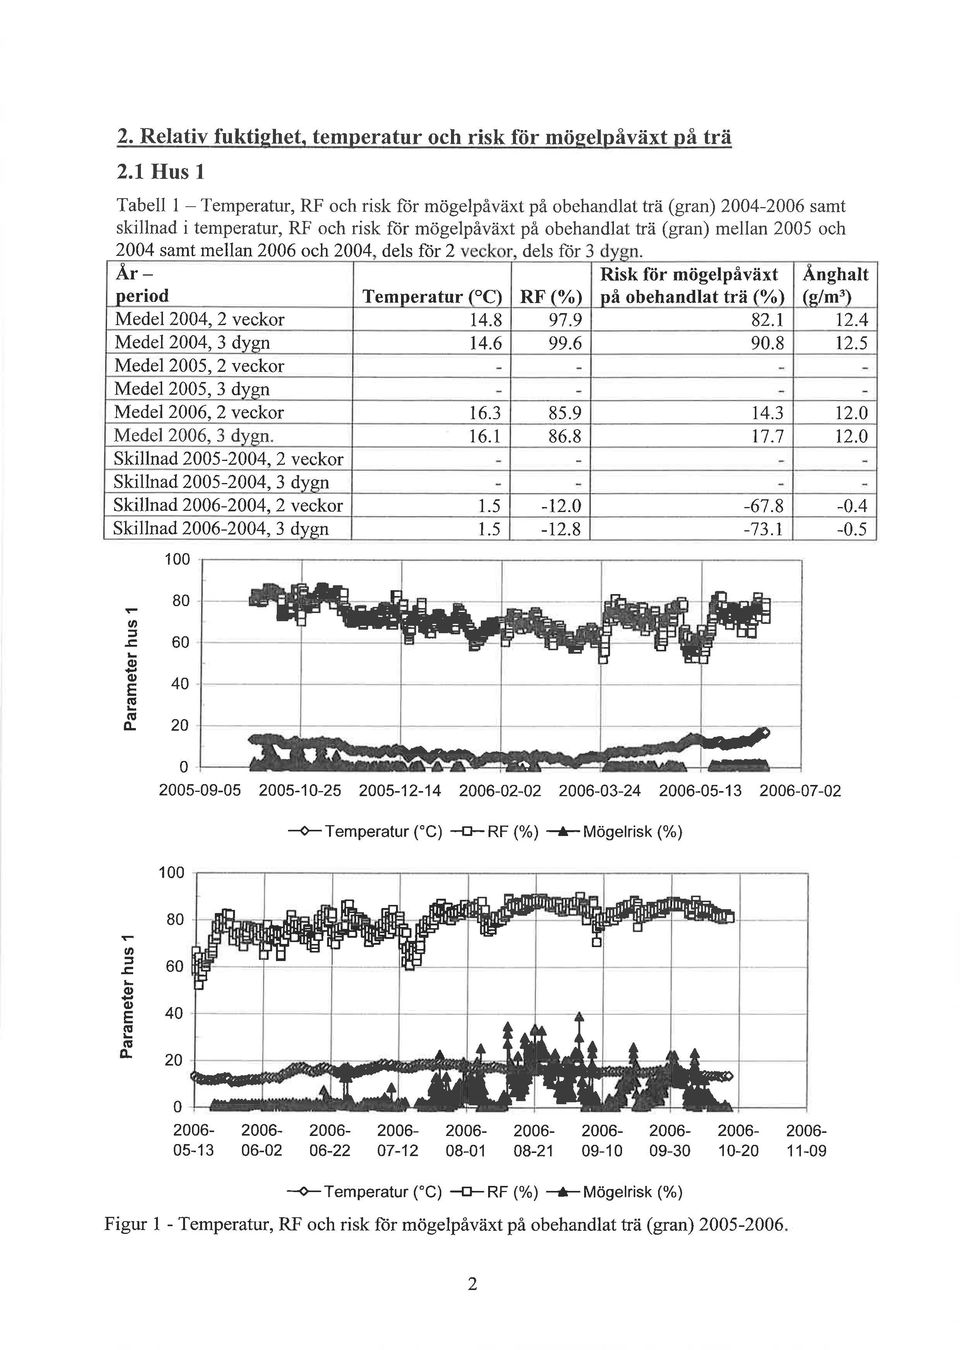 ch24 dels ftir 2 dels ñr 3 Risk för mögelpåväxt på behandlat tra (/) Änghalt (e/m') Årperid Temperatur ("C) RF (%) Medel 24,2 veckr 14.8 97.9 82.1 12.4 Medel 24,3 dygn 14.6 99.6 9.8 t2.